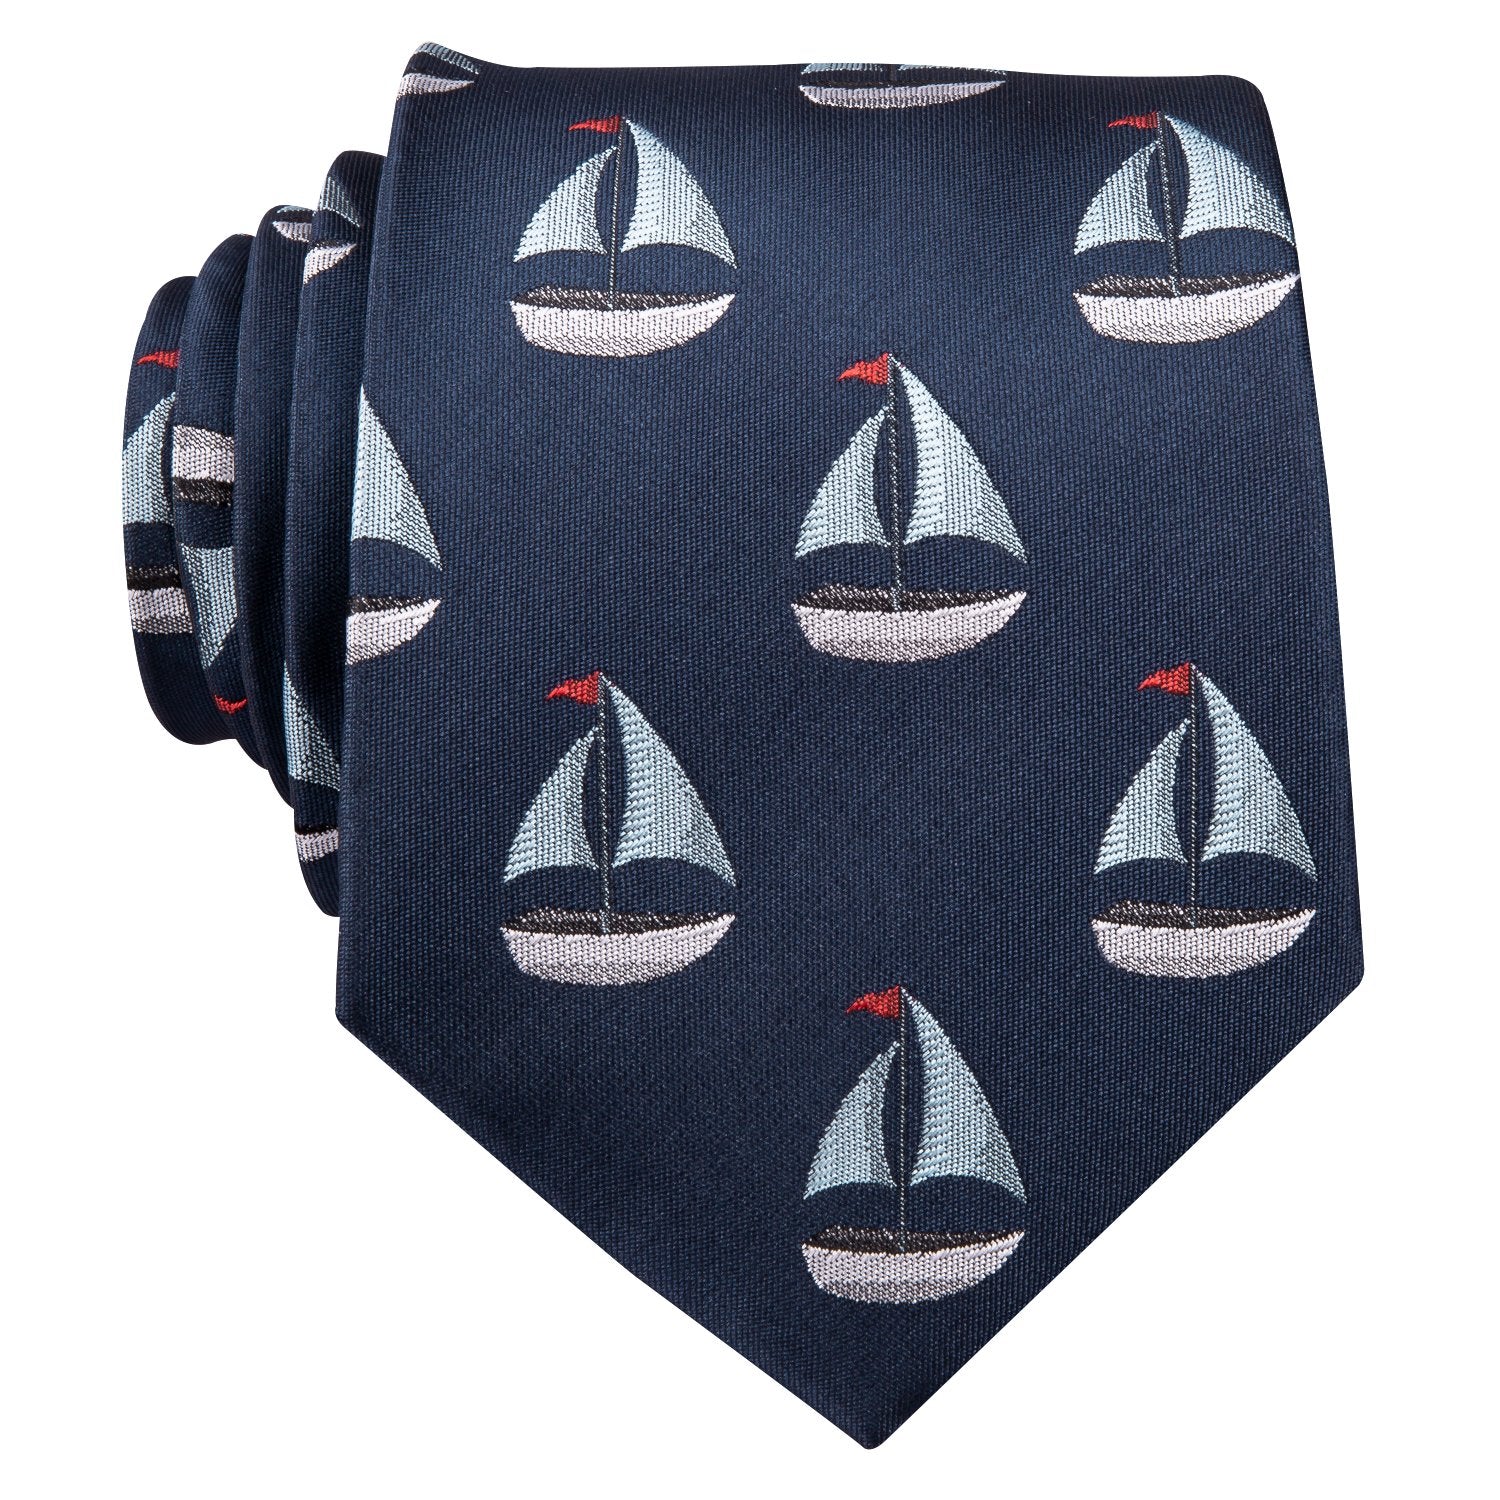 Sailboat Deep Blue Novelty Silk Men's Tie Hanky Cufflinks Set - barry-wang